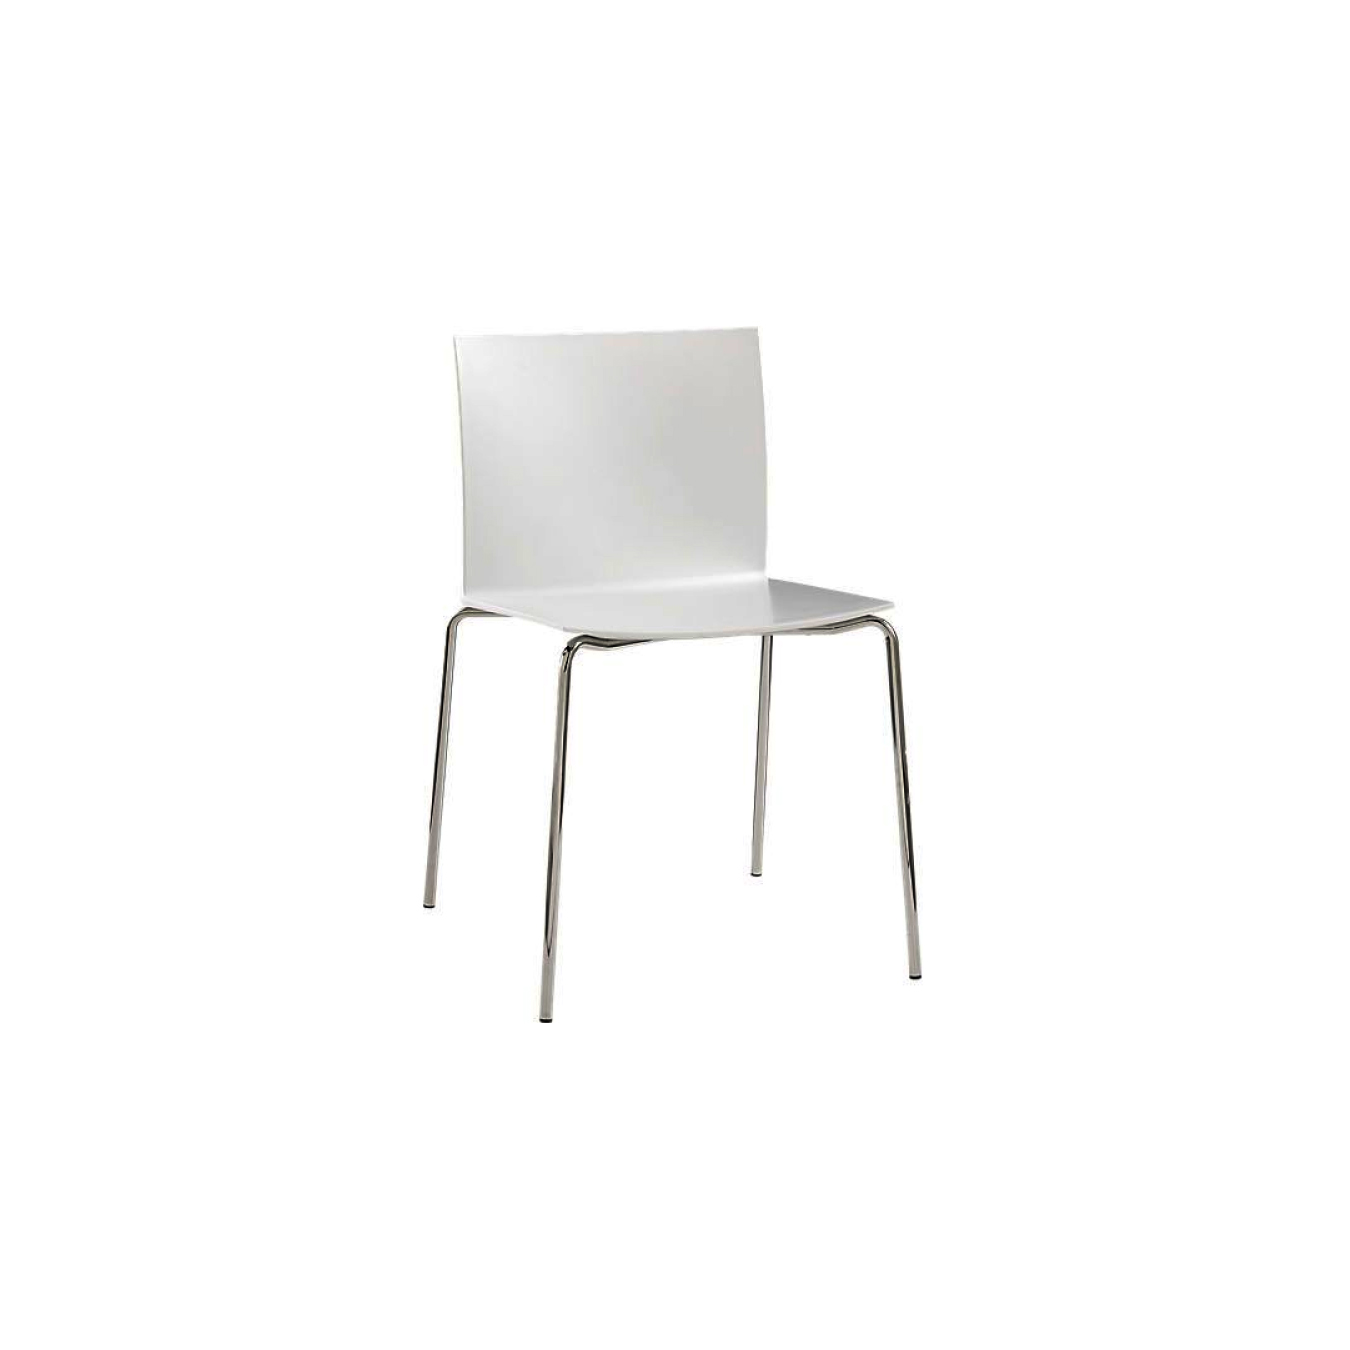 Chair - "Slim" White